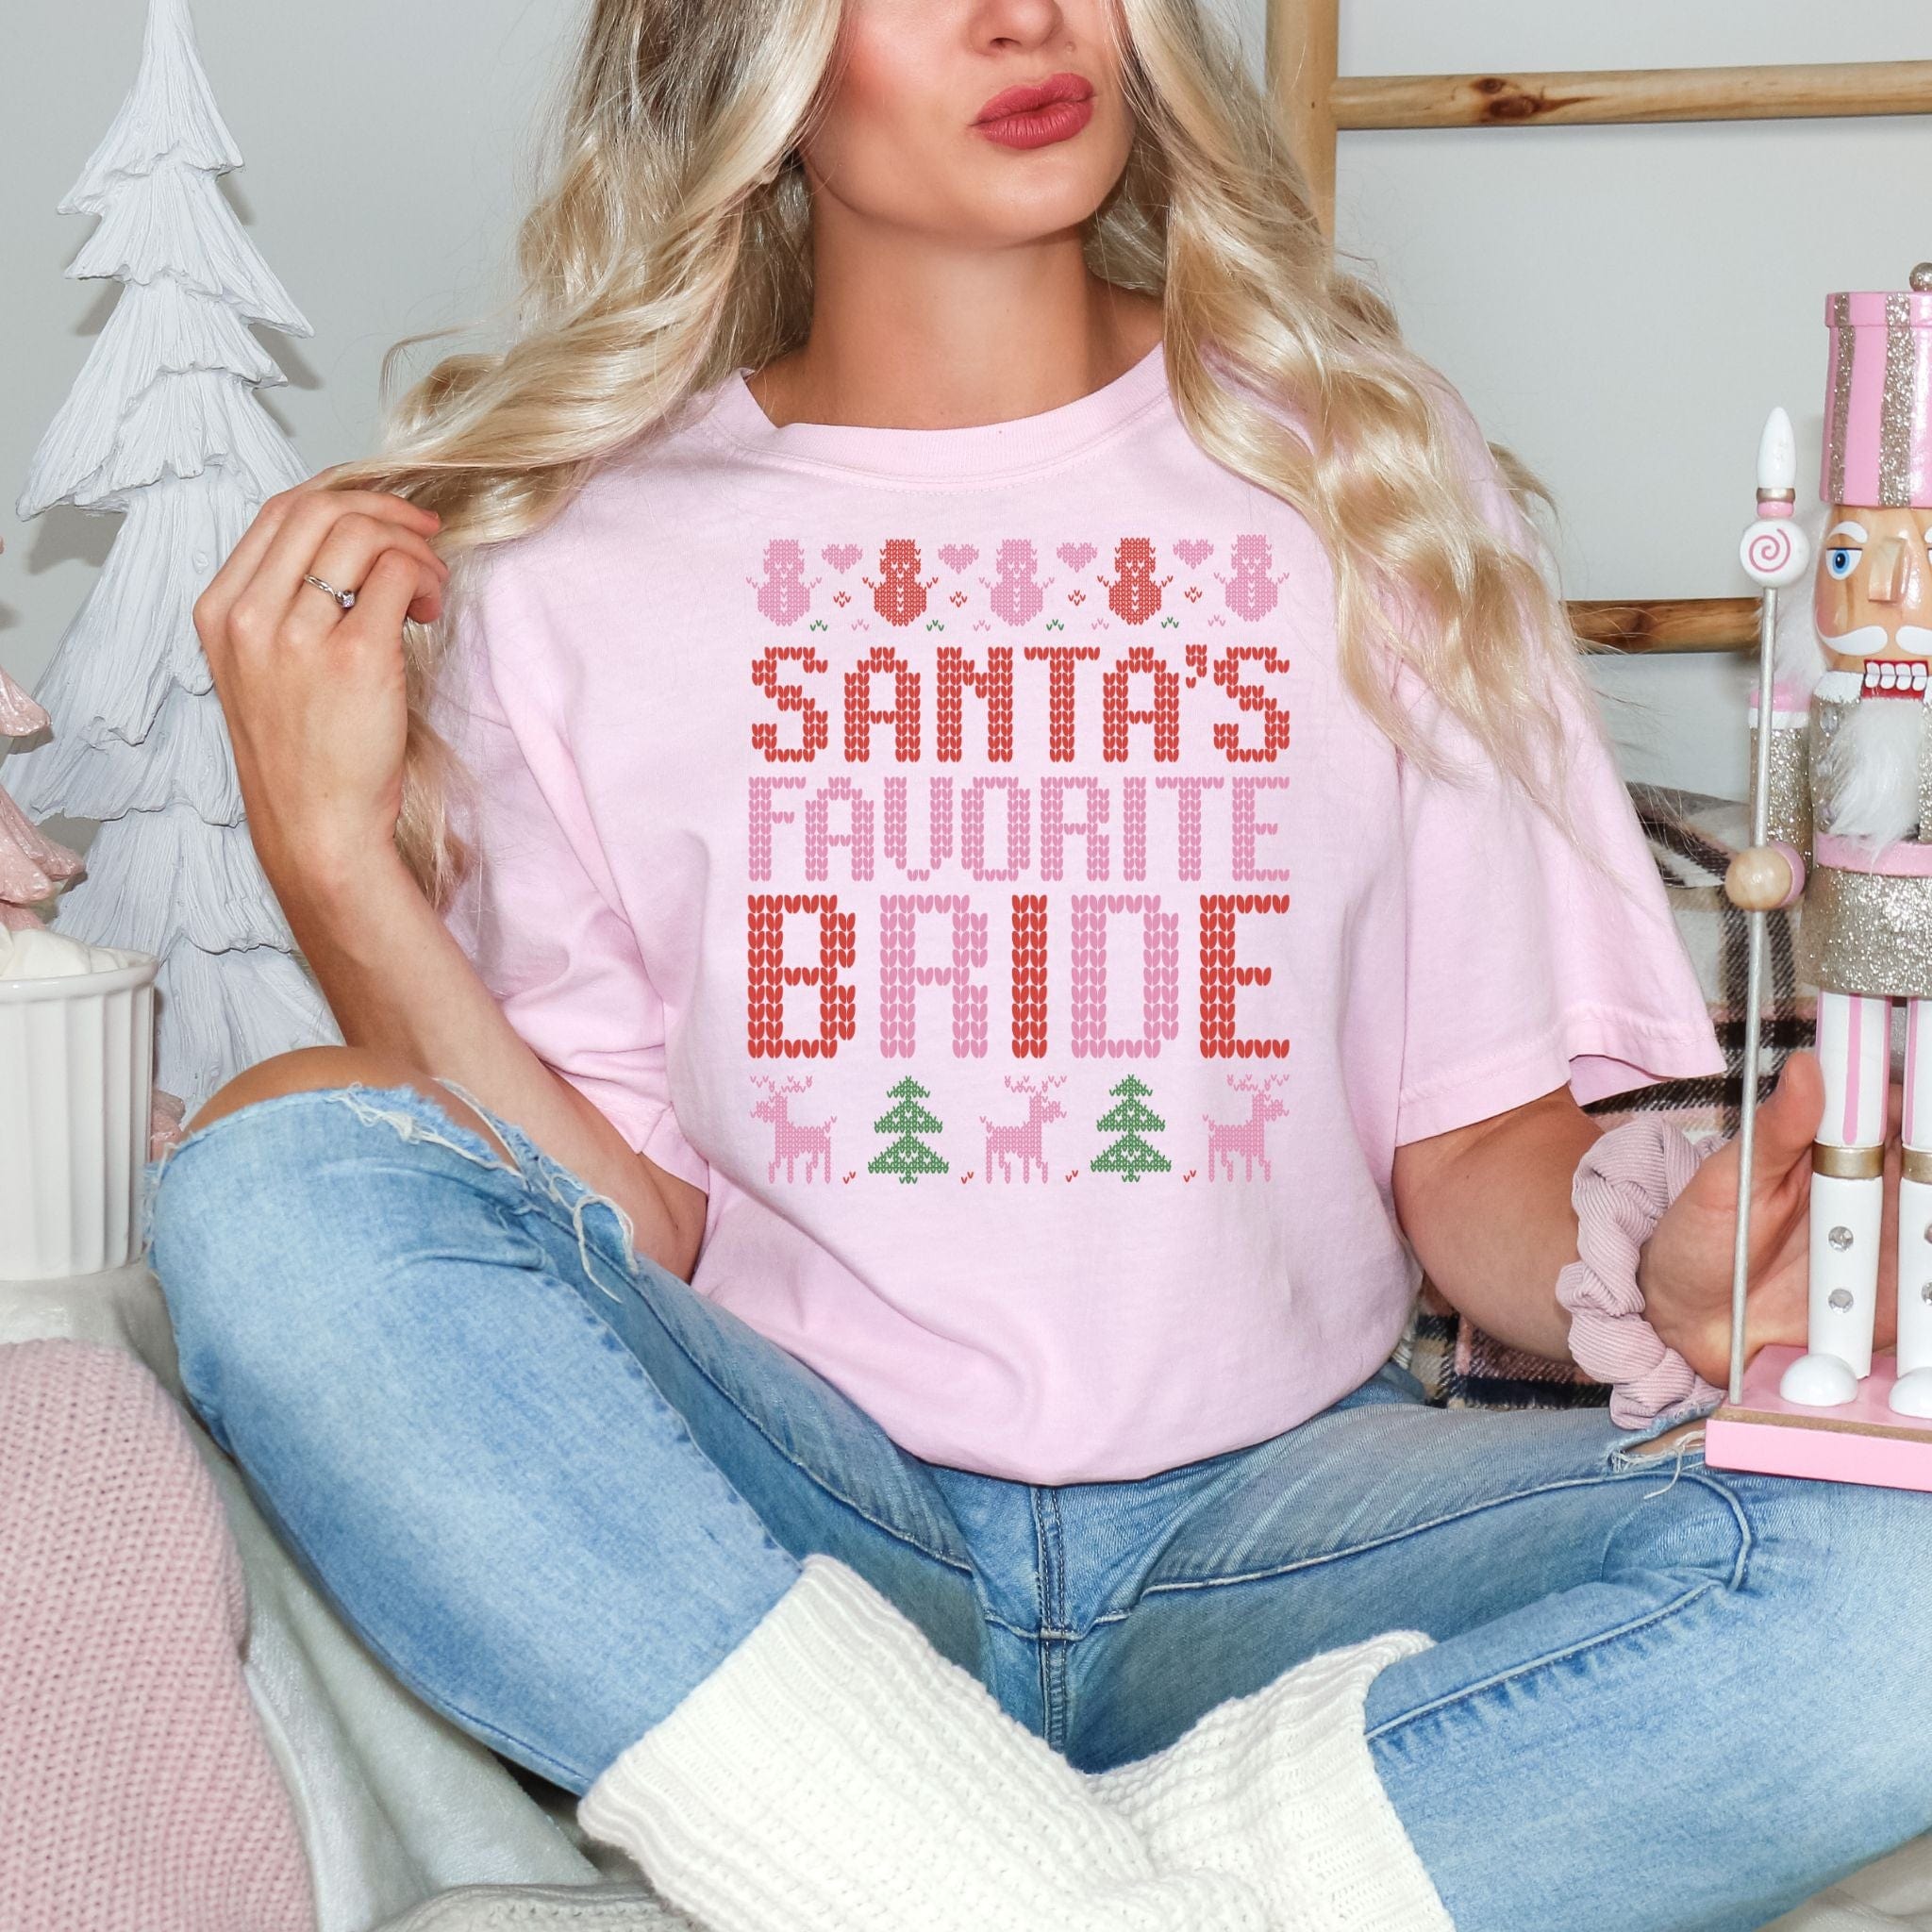 Santa's Favorite Bride T-Shirt